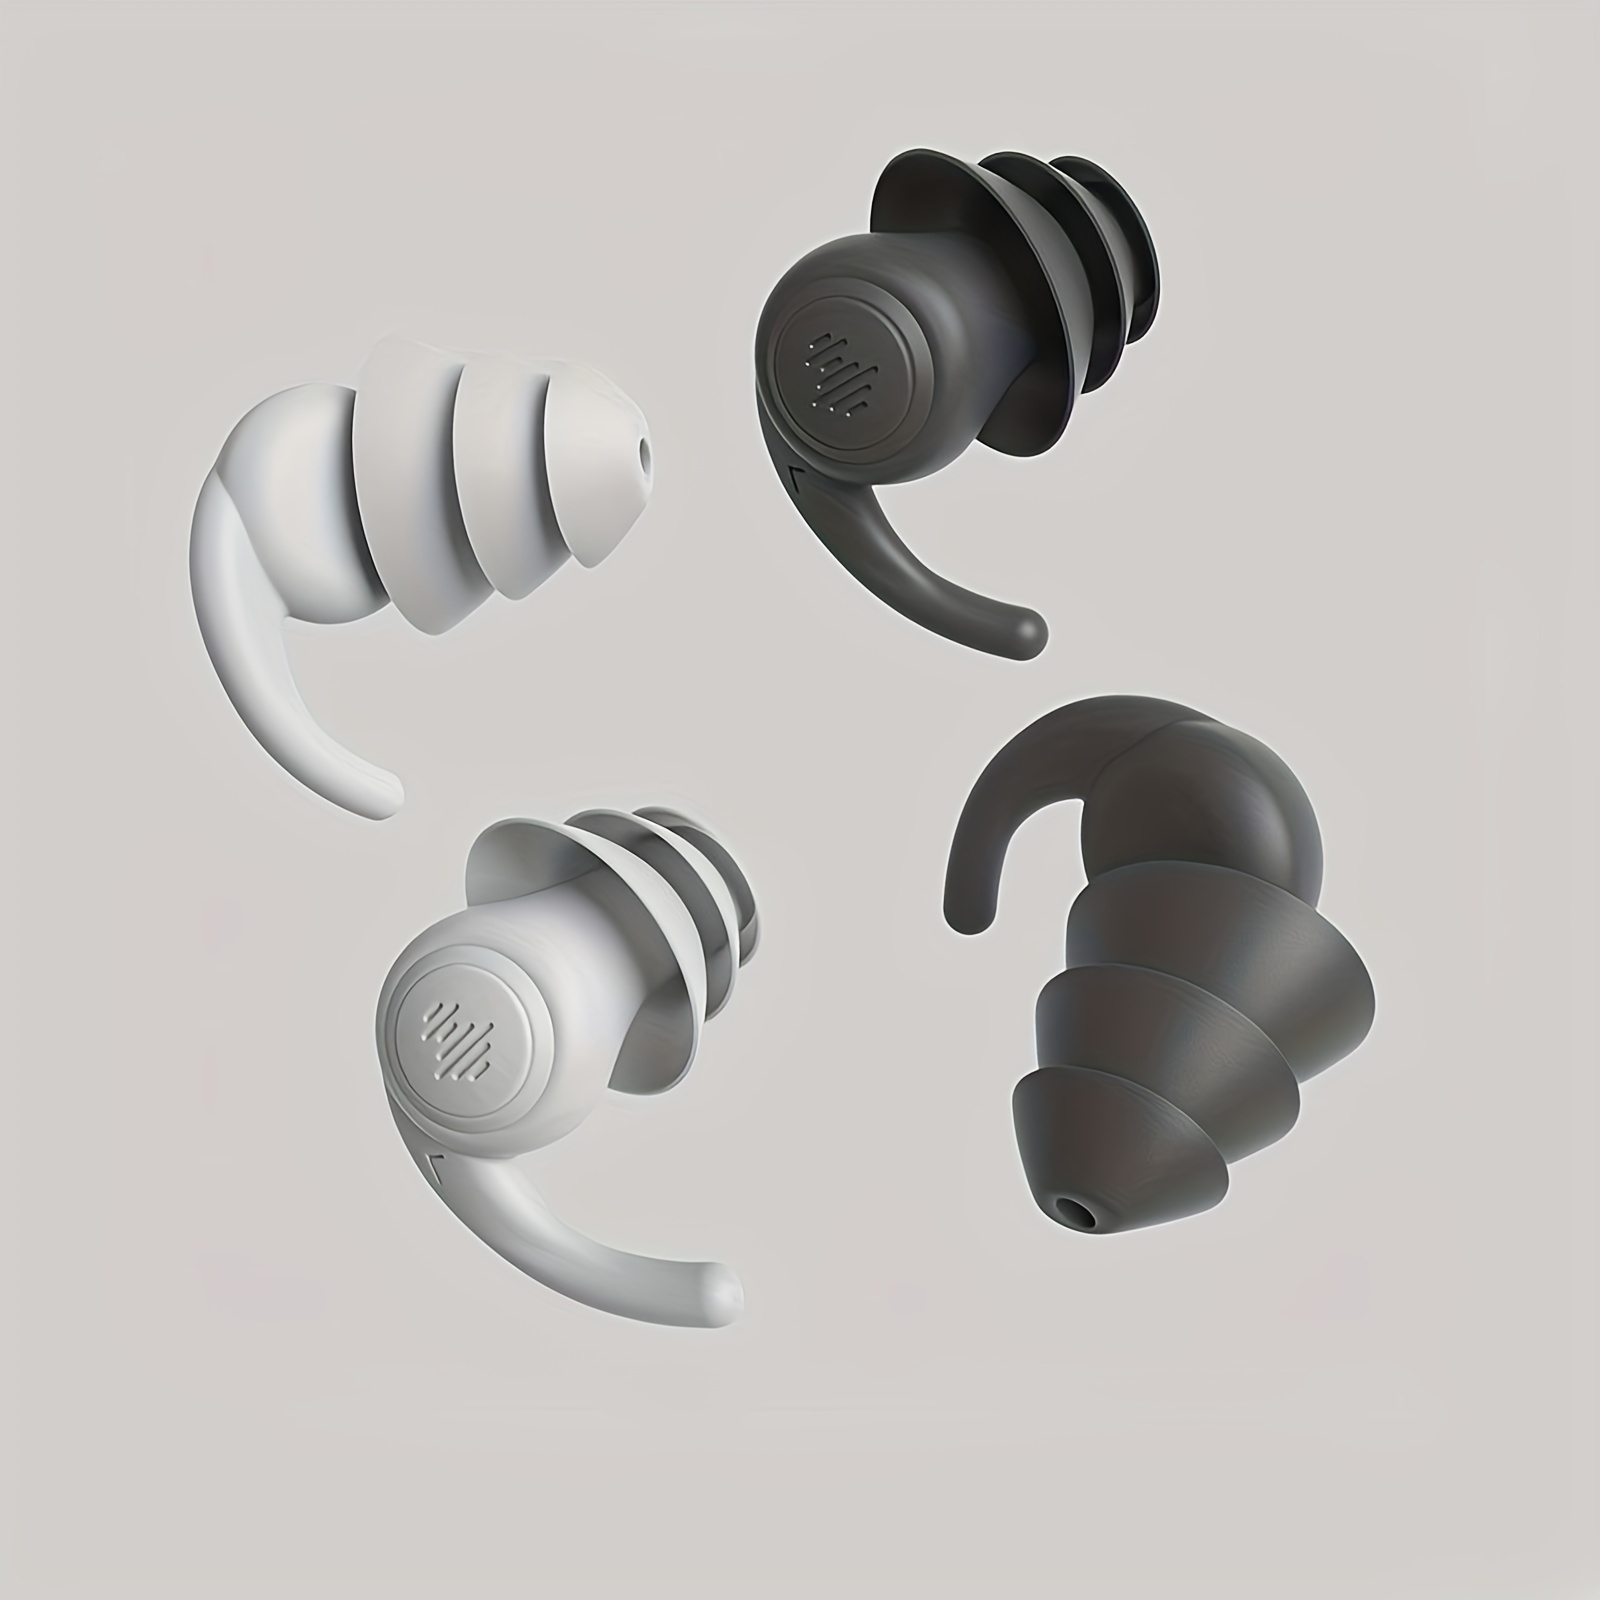 Bouchons d'oreille insonorisés en Silicone souple, Protection Anti